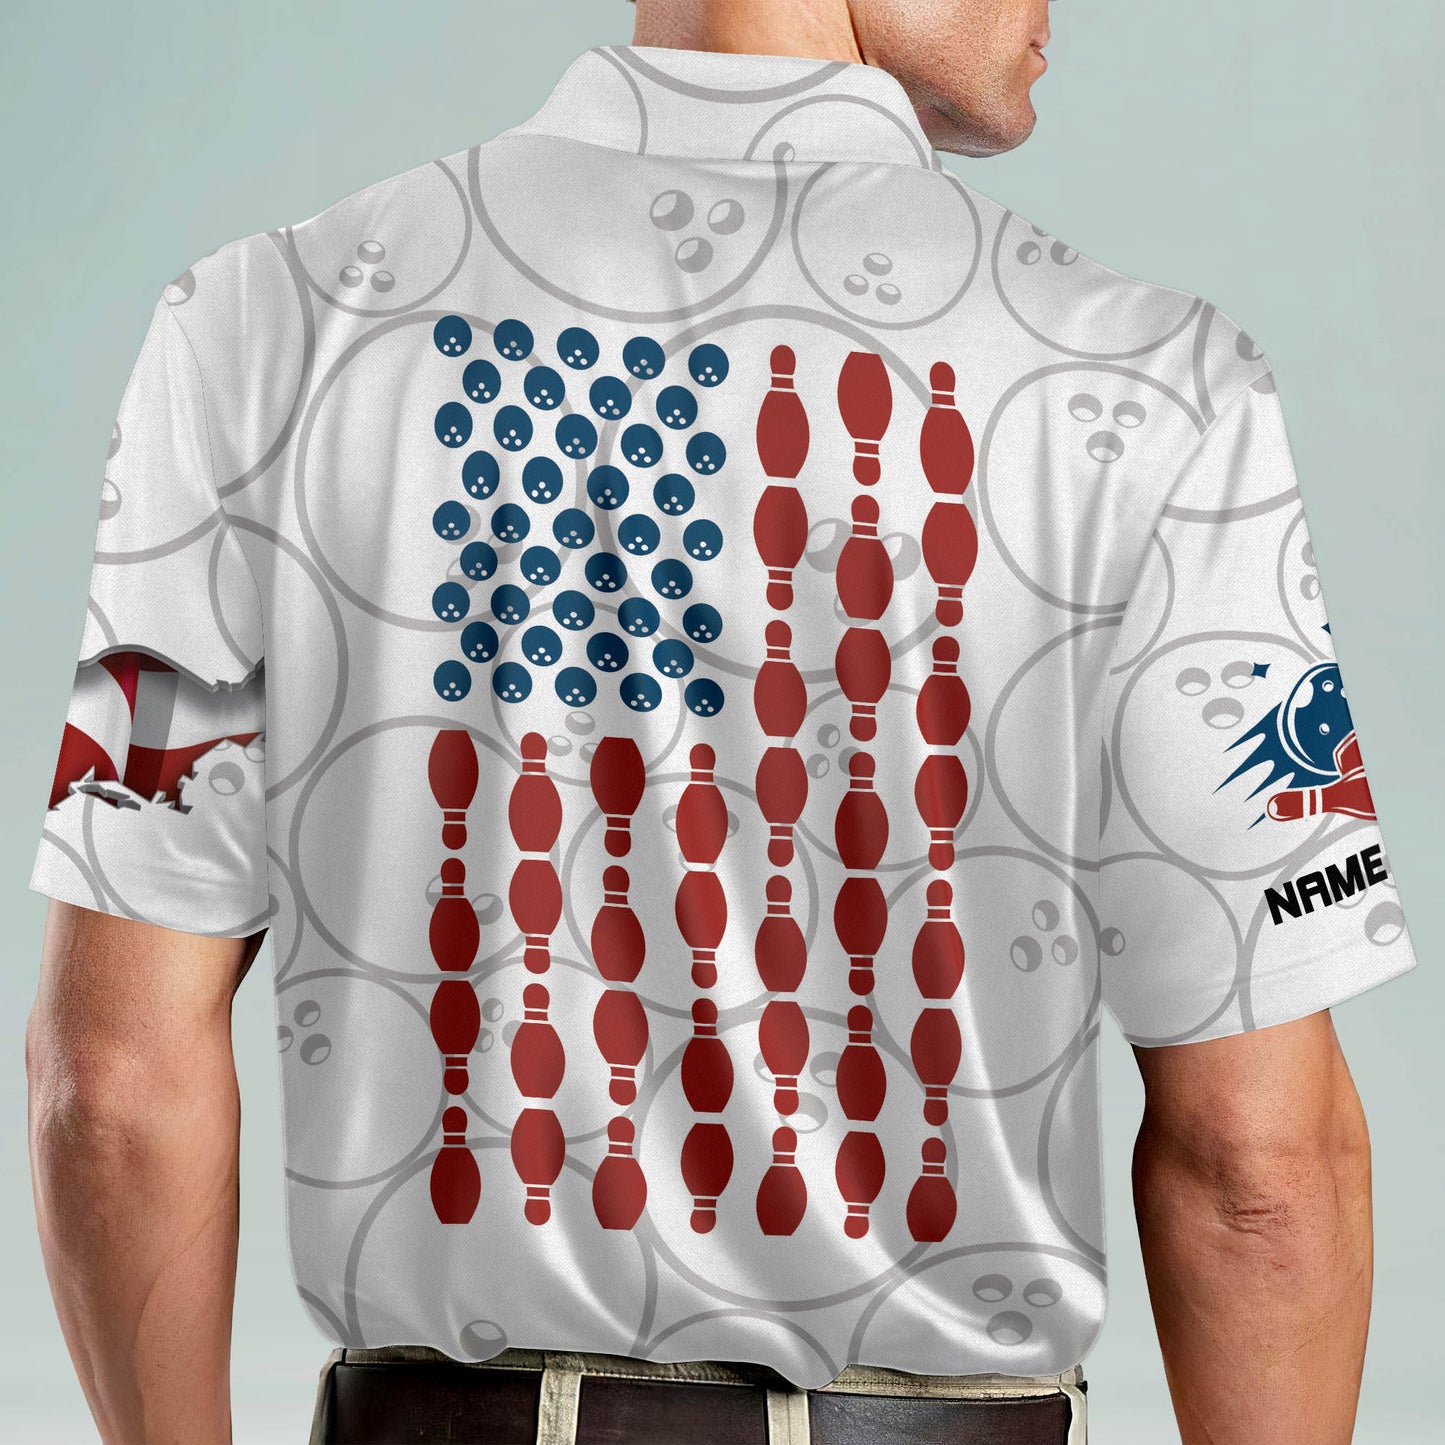 Custom American Patriotic Bowling Shirt BM0082